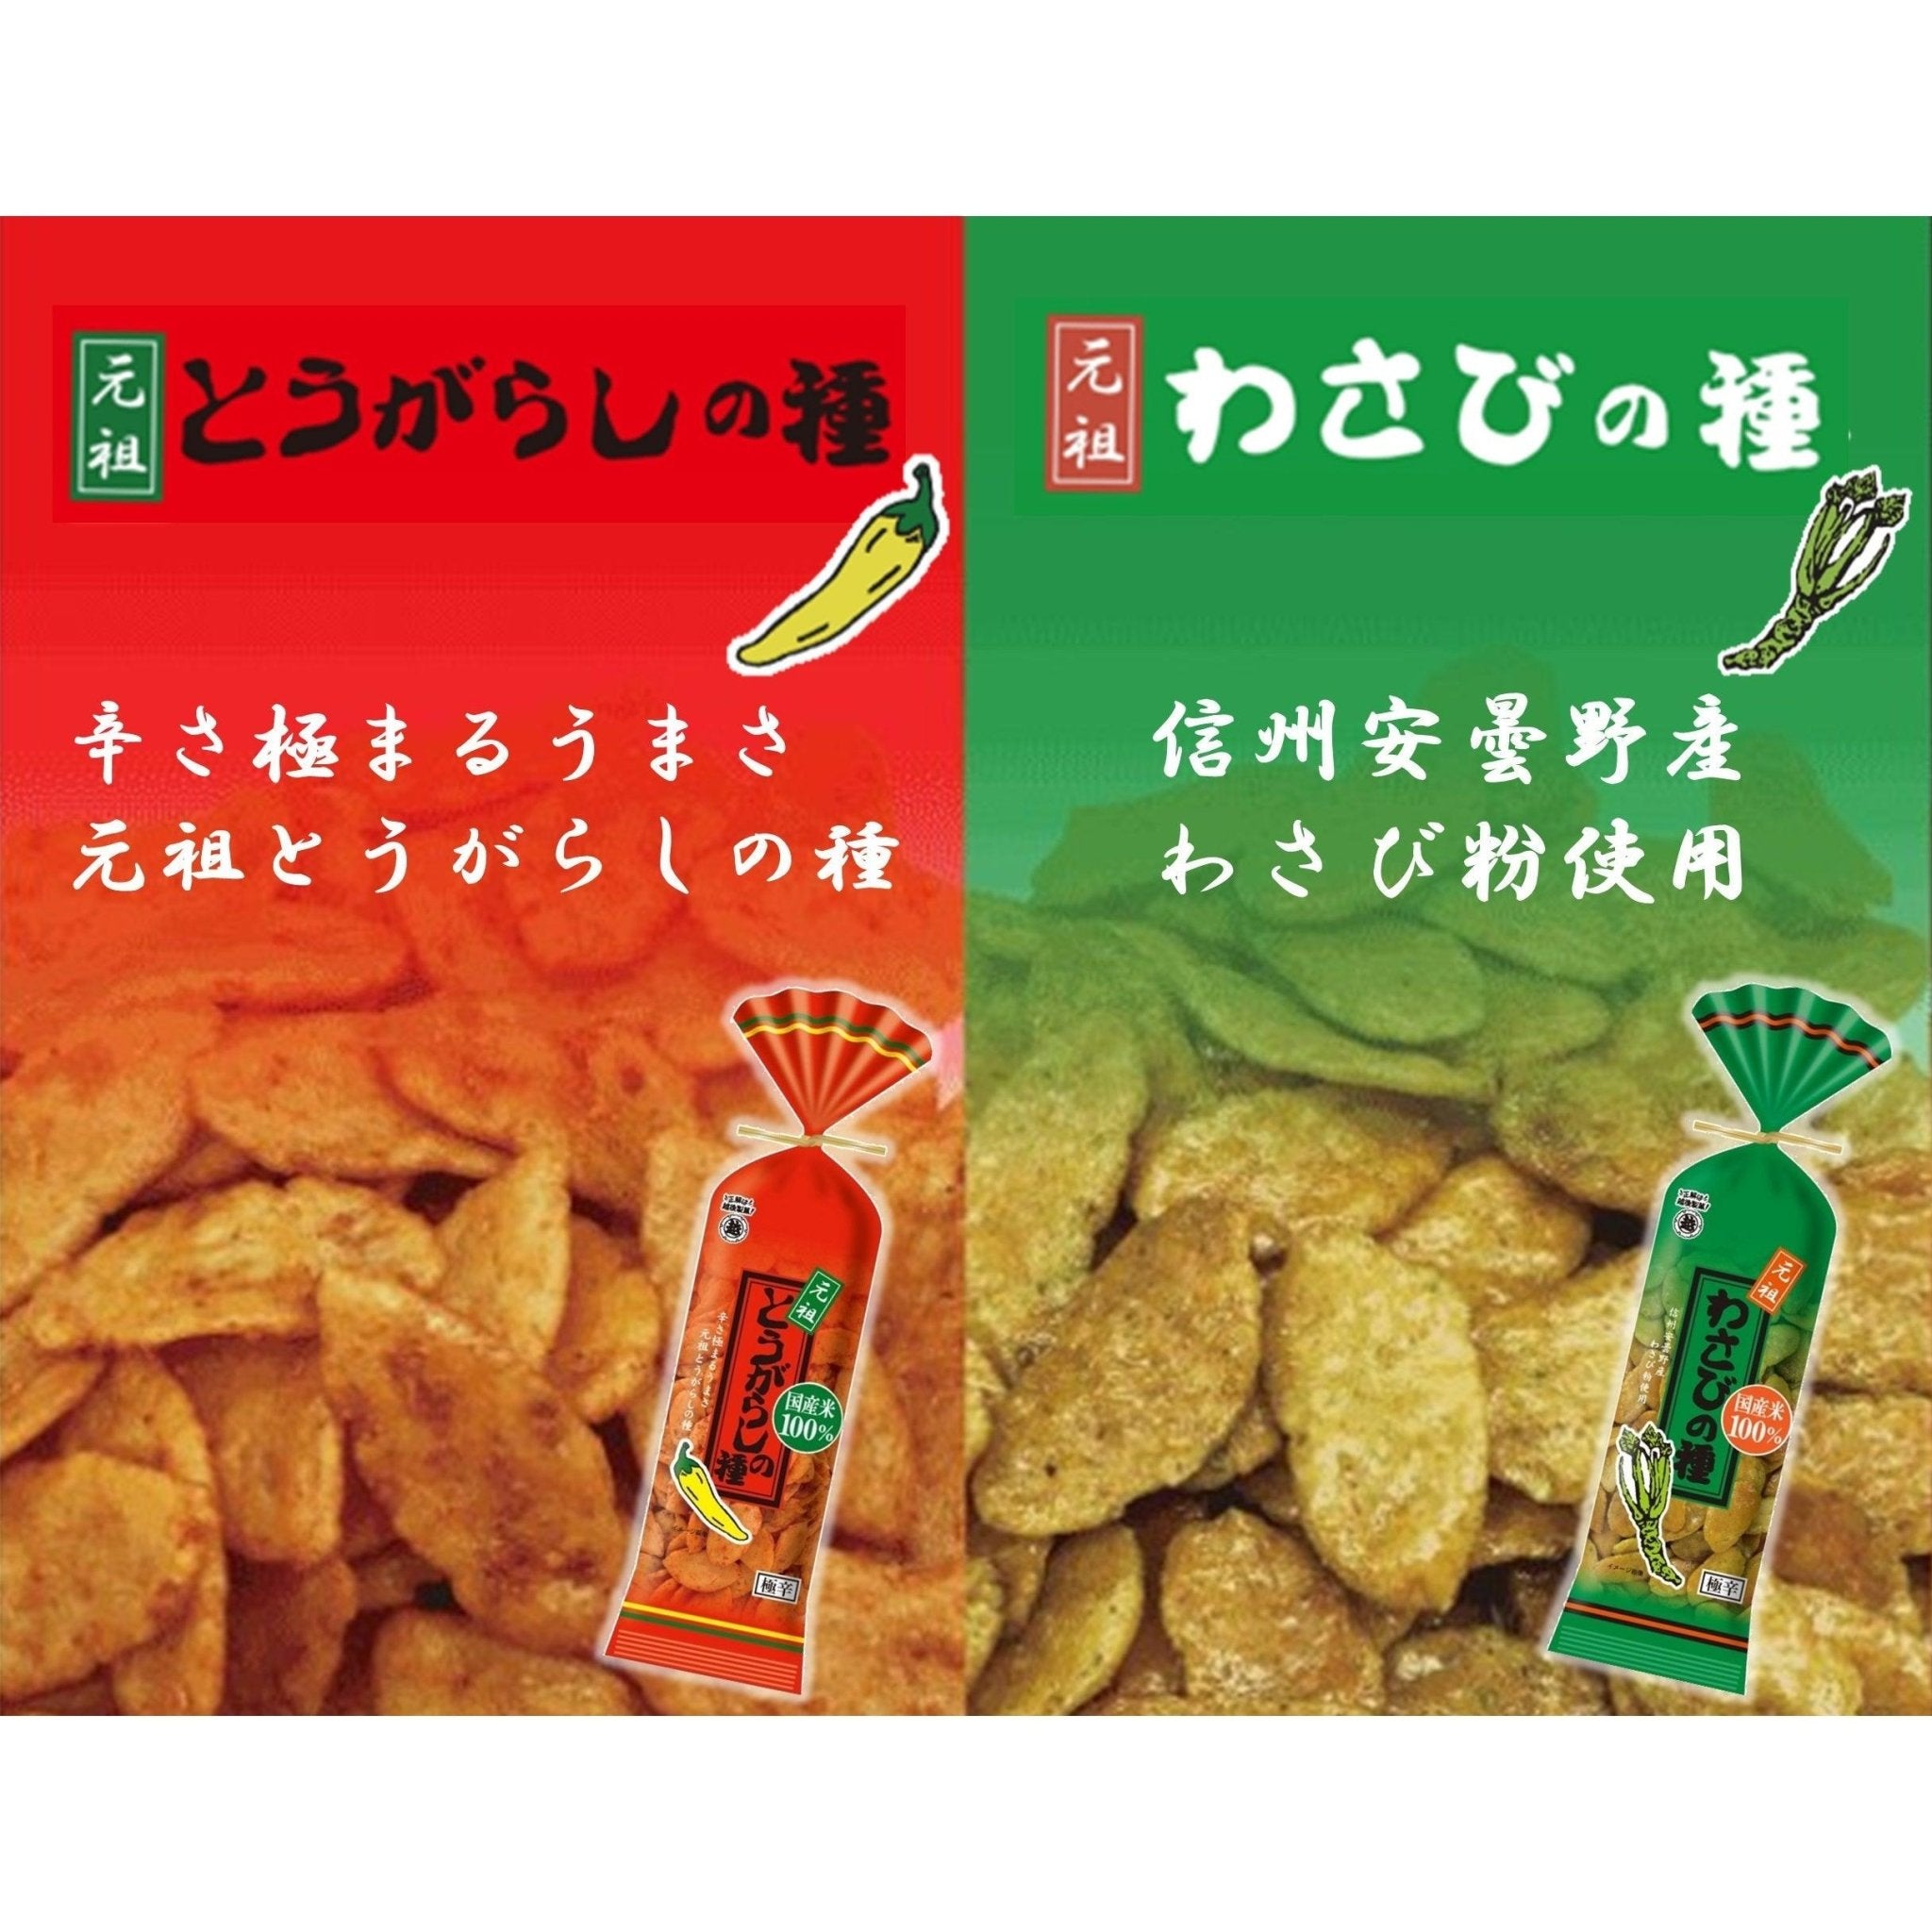 Echigo Seika Wasabi no Tane Wasabi Flavor Rice Crackers 80g (Pack of 5)